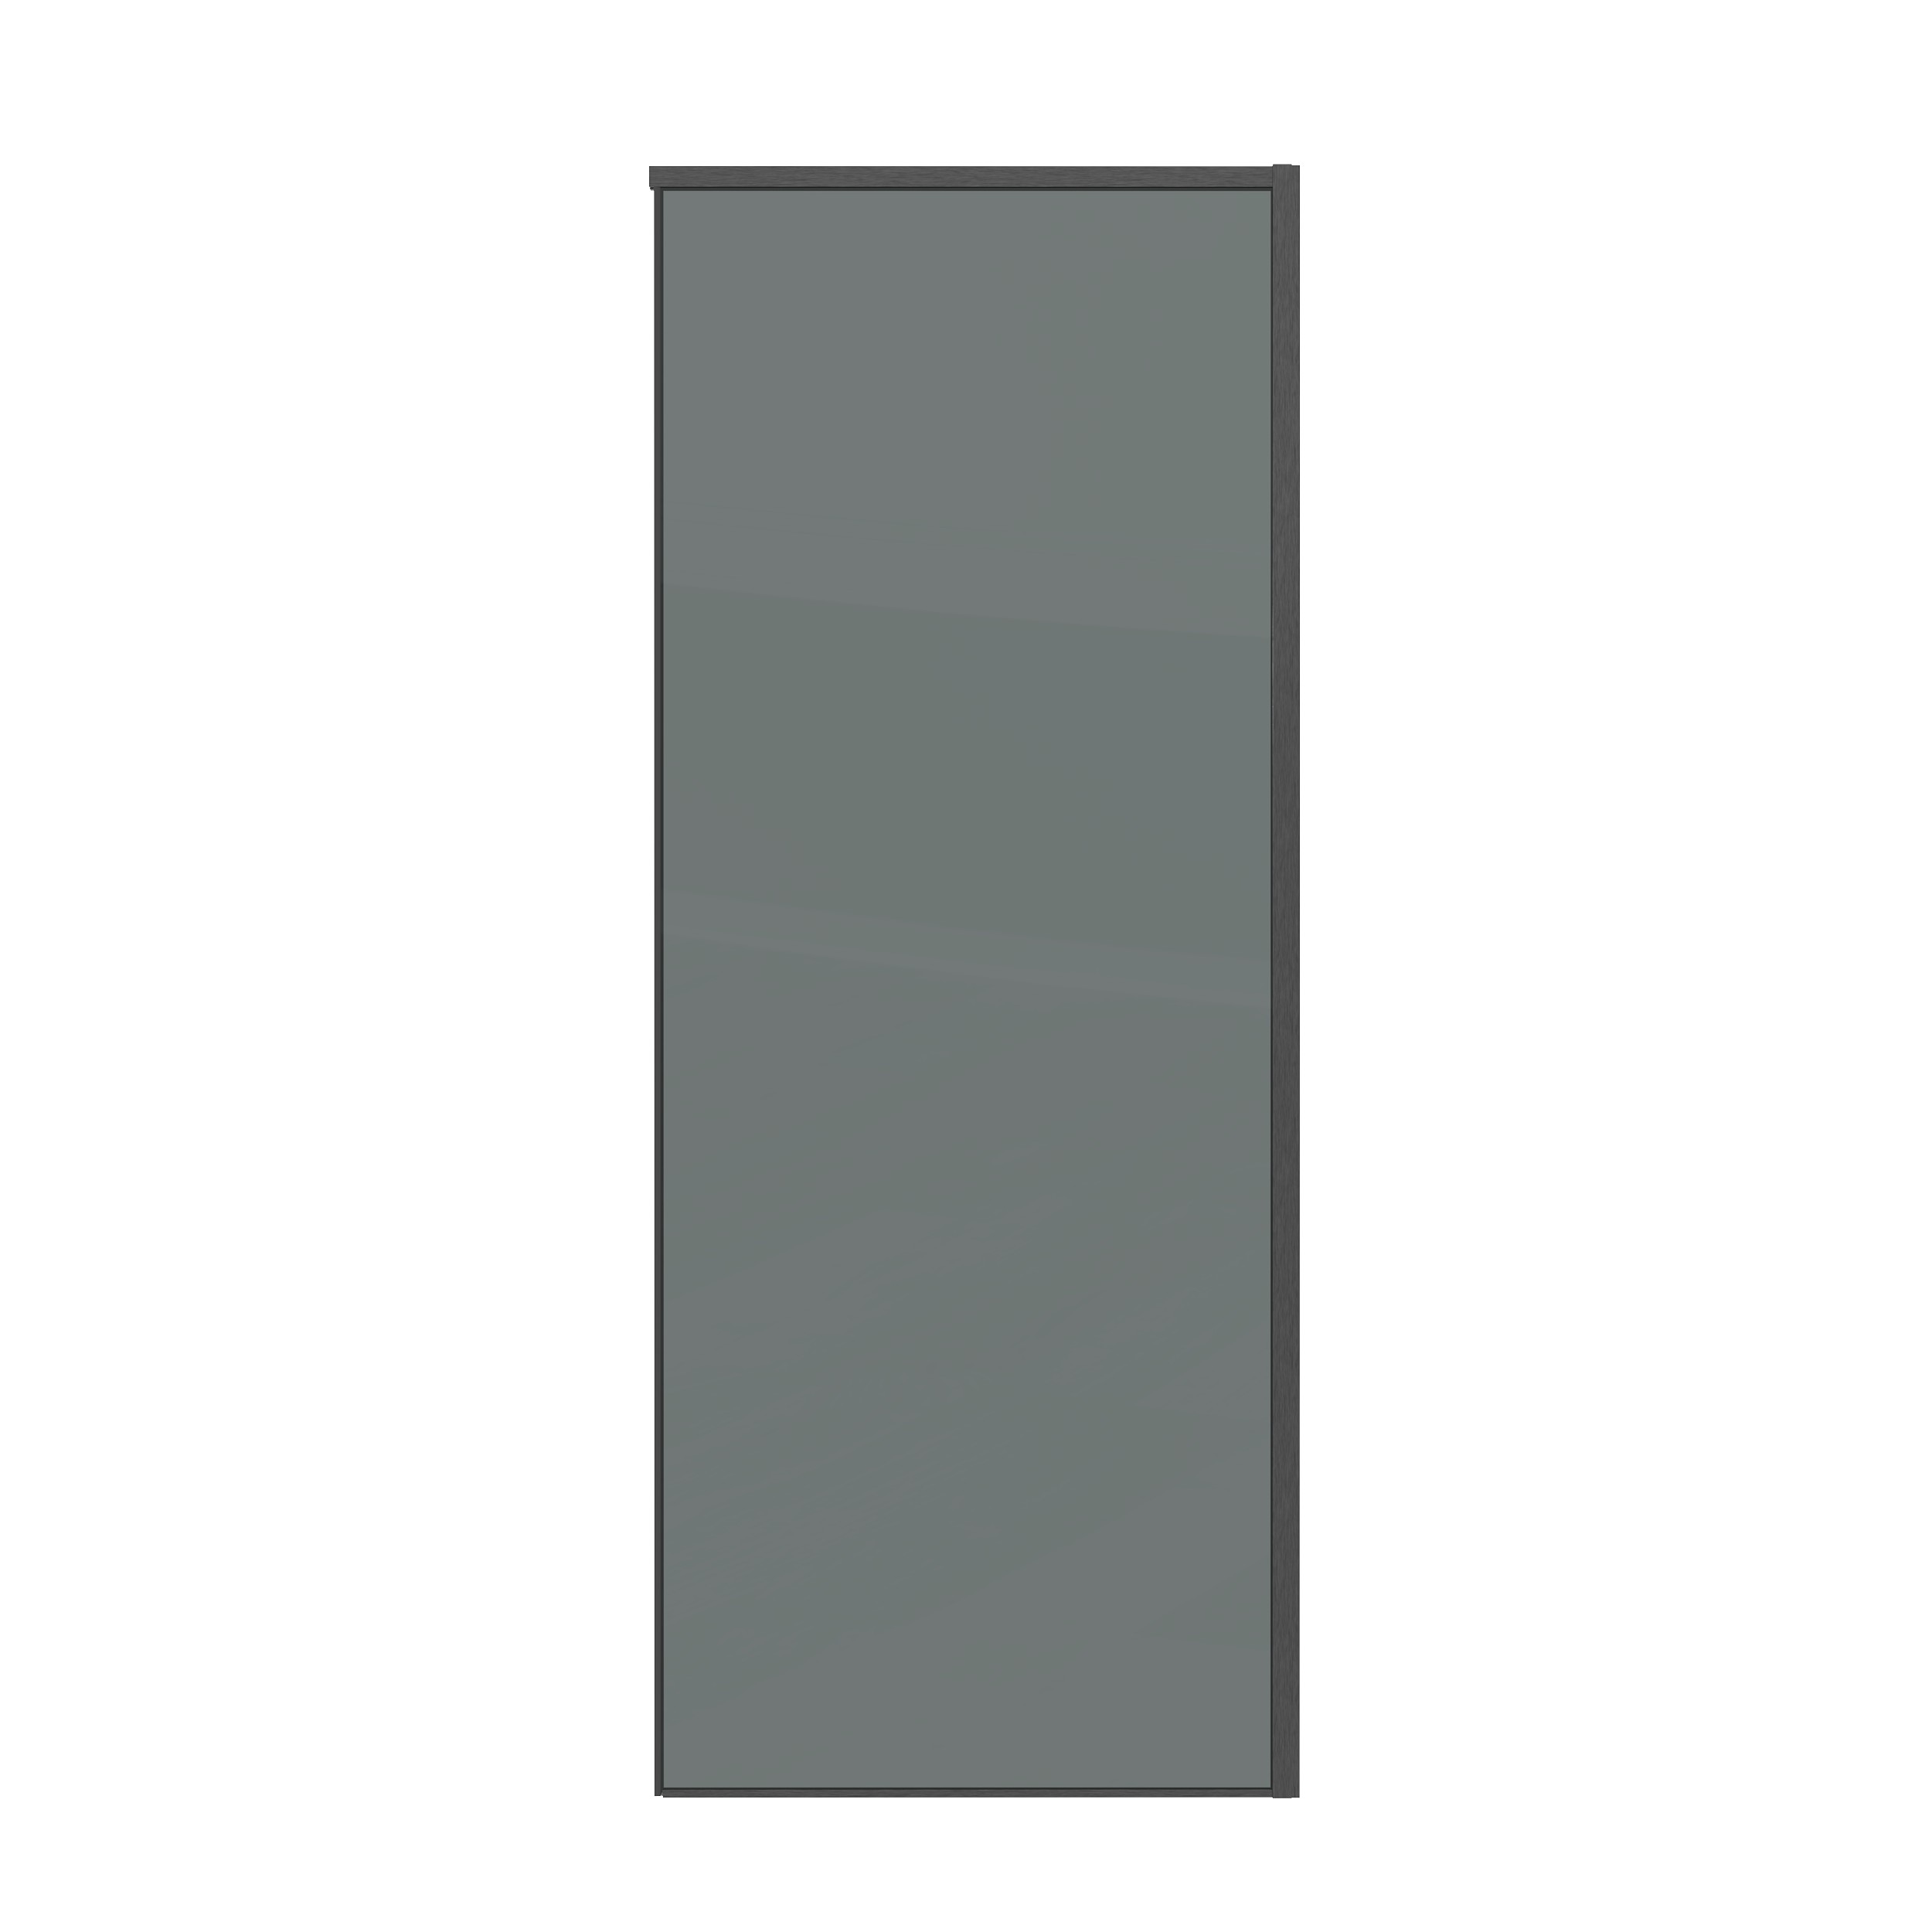 Боковая стенка Grossman Galaxy 70x195 200.K33.01.70.42.10 стекло тонированное, профиль графит - фото 1